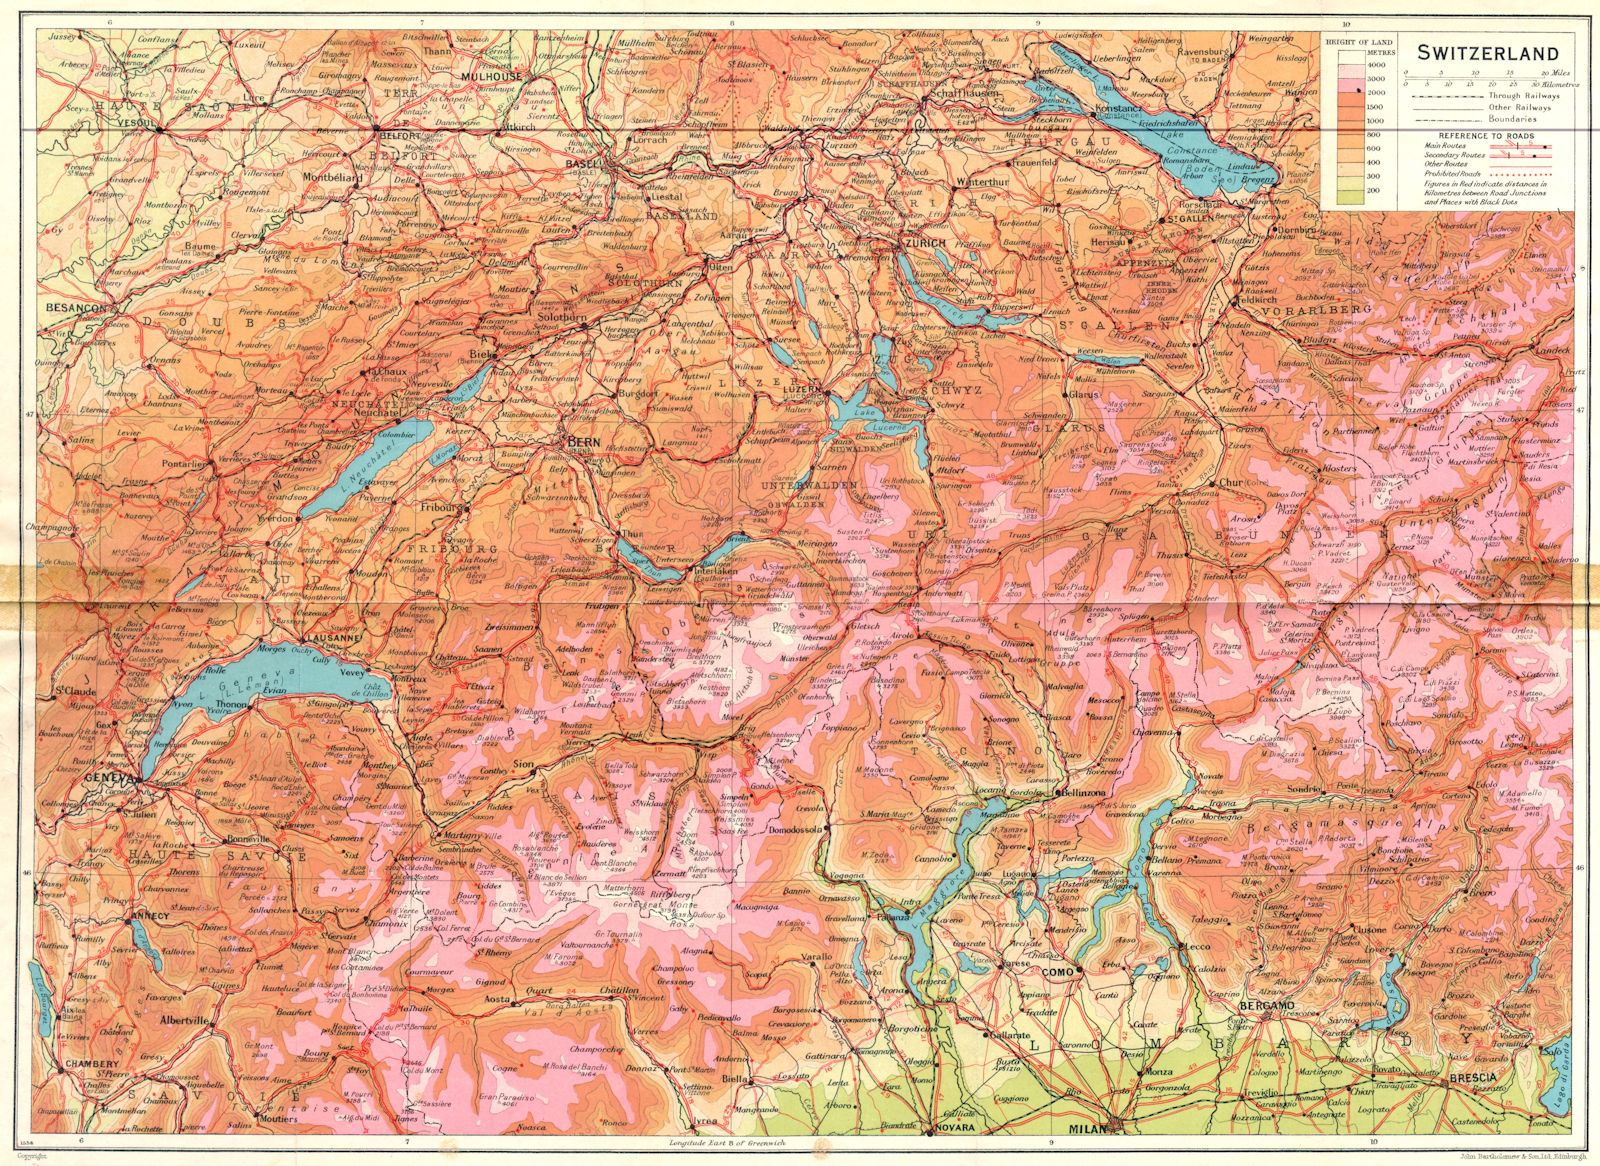 SWITZERLAND. Switzerland 1930 old vintage map plan chart